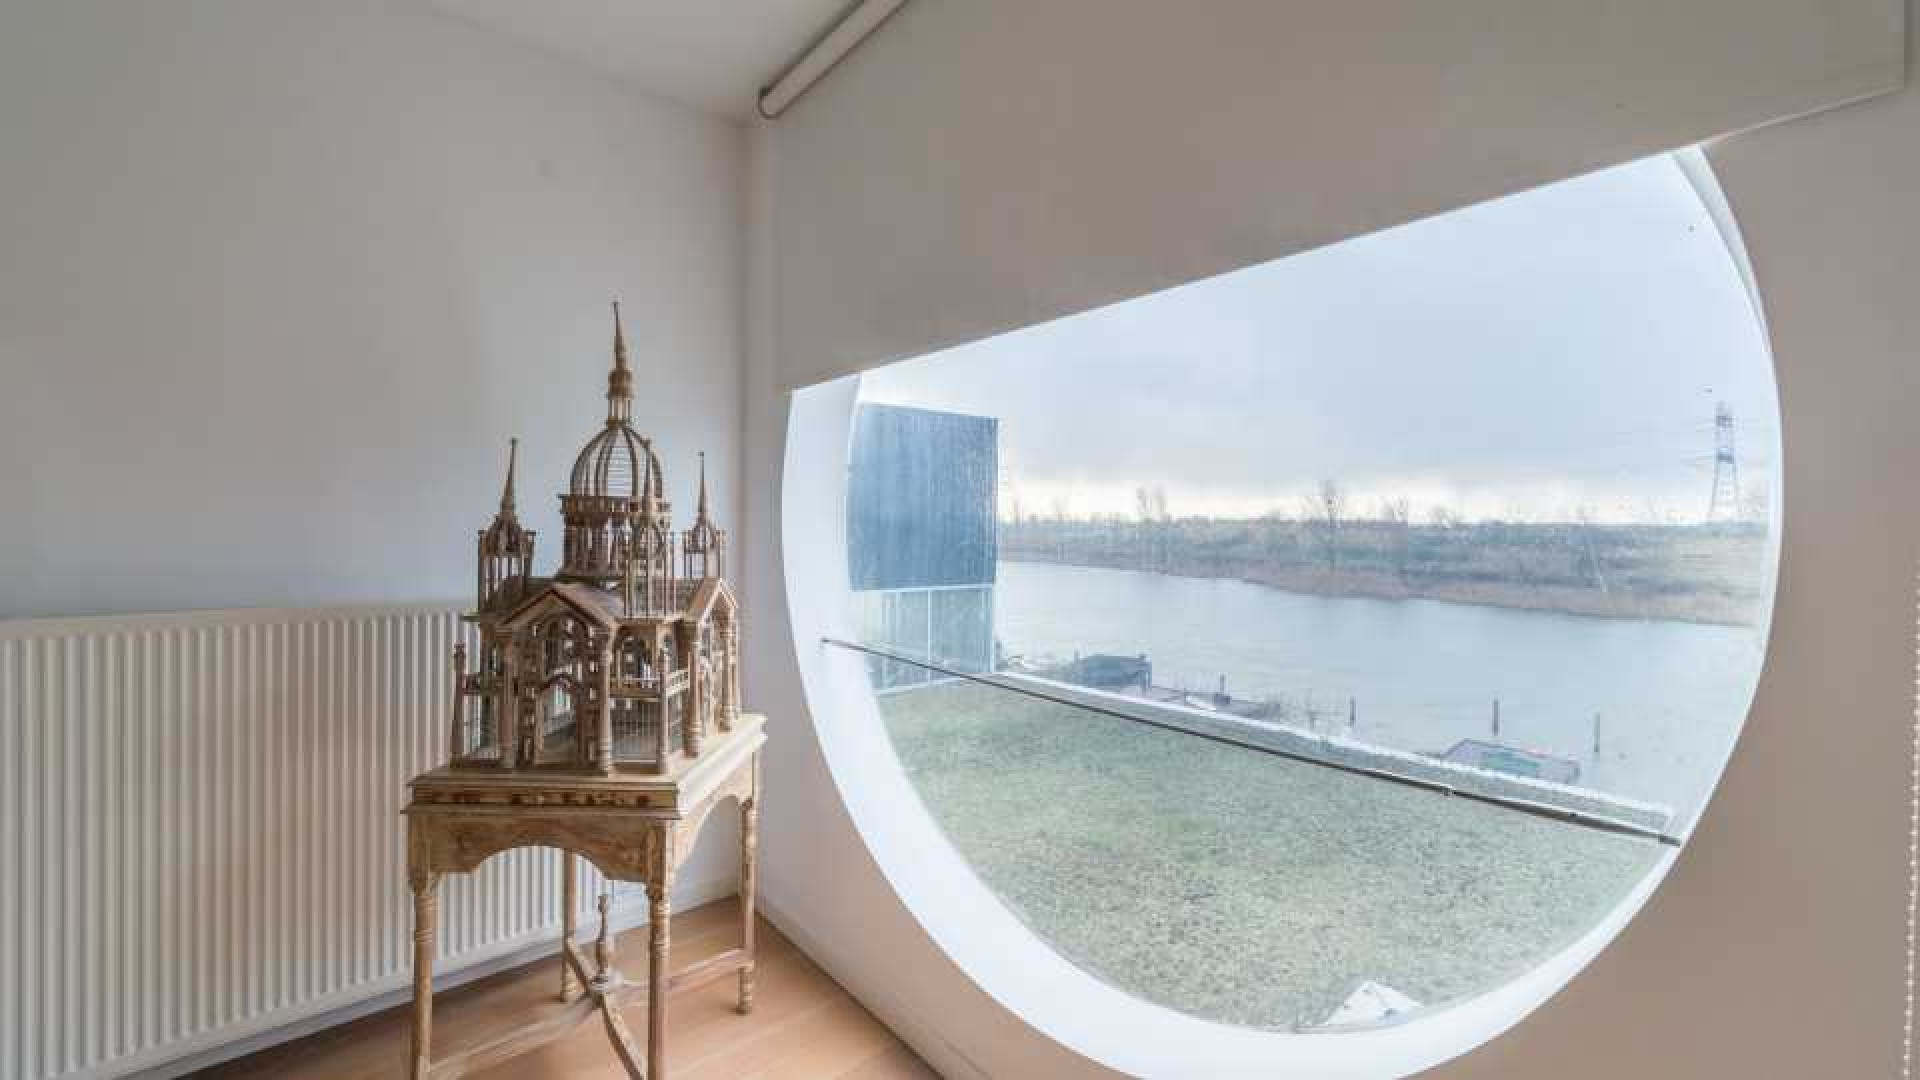 Candy Dulfer verkoopt haar luxe watervilla in Amsterdam. Zie foto's 17